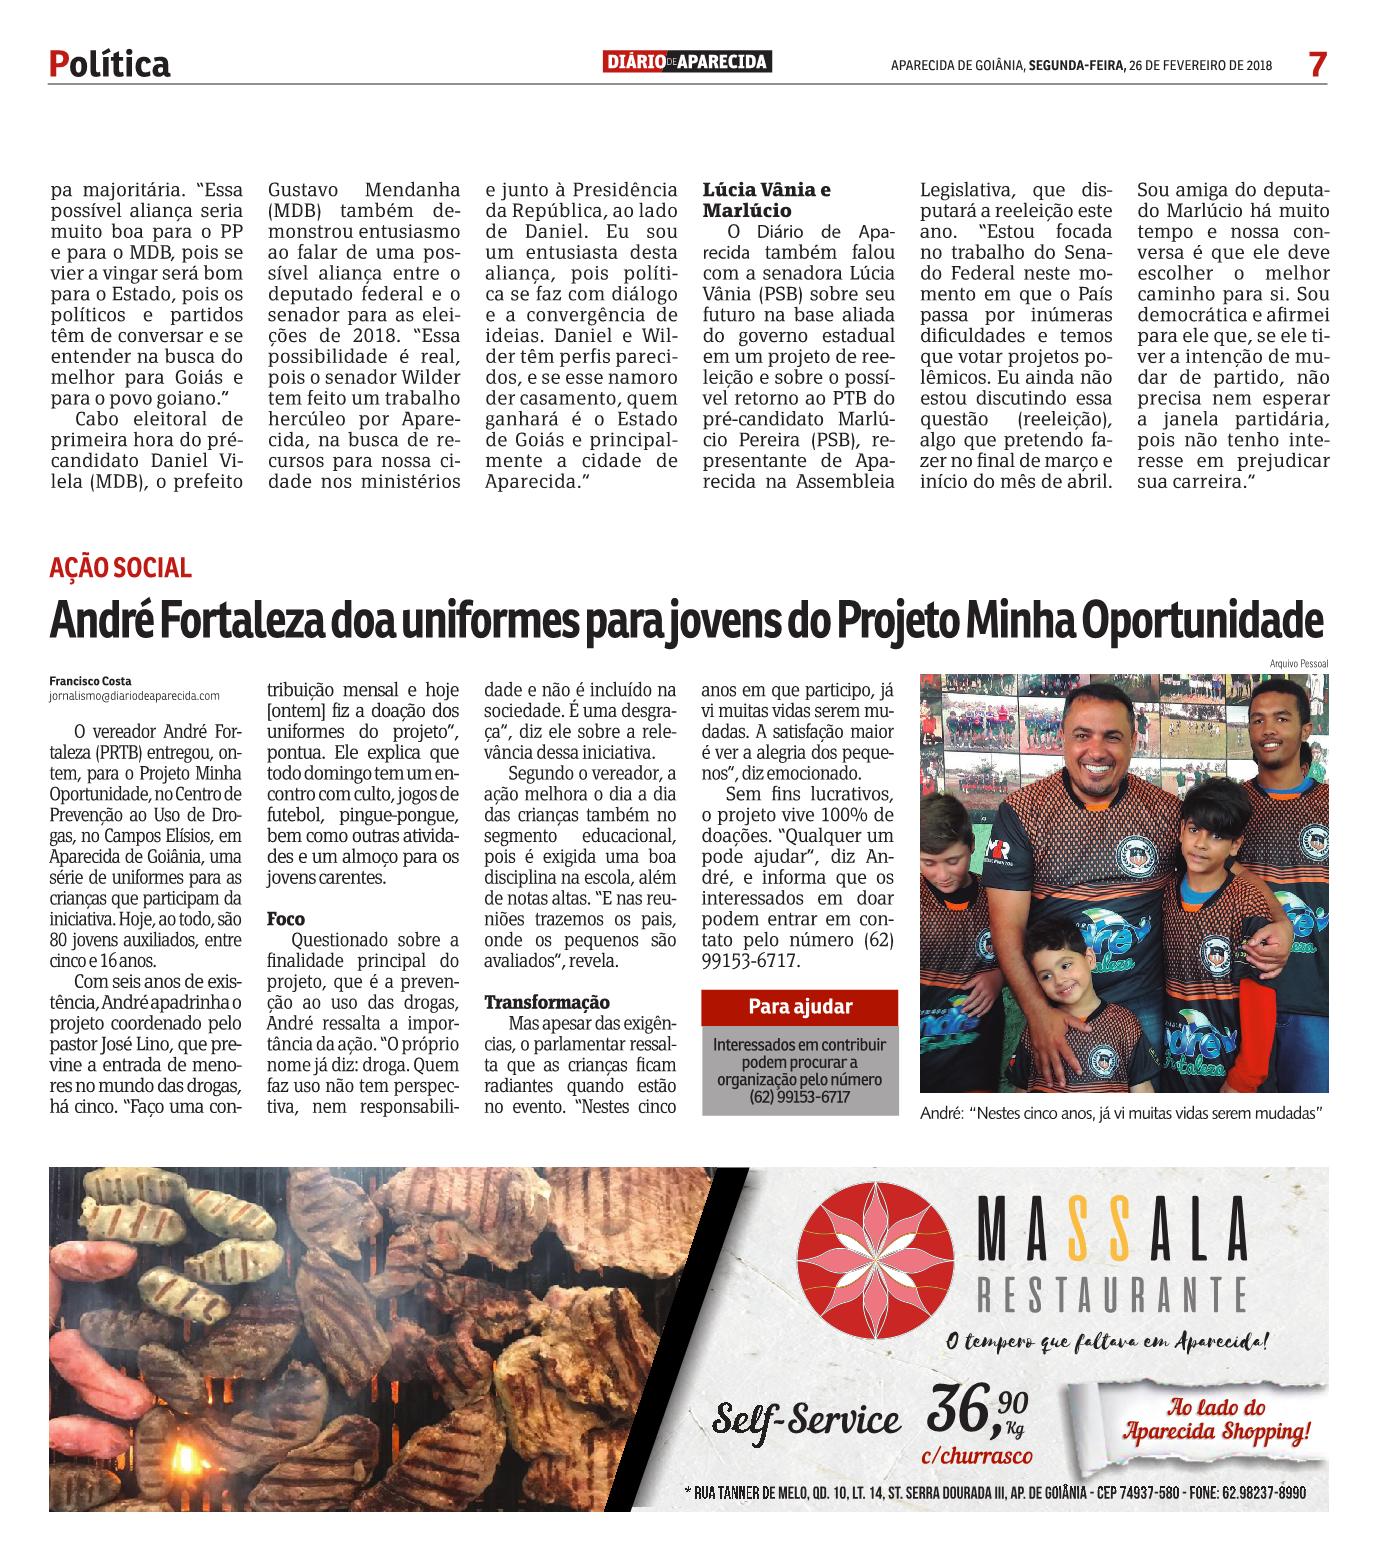 Reportagem no Jornal Diário de Aparecida